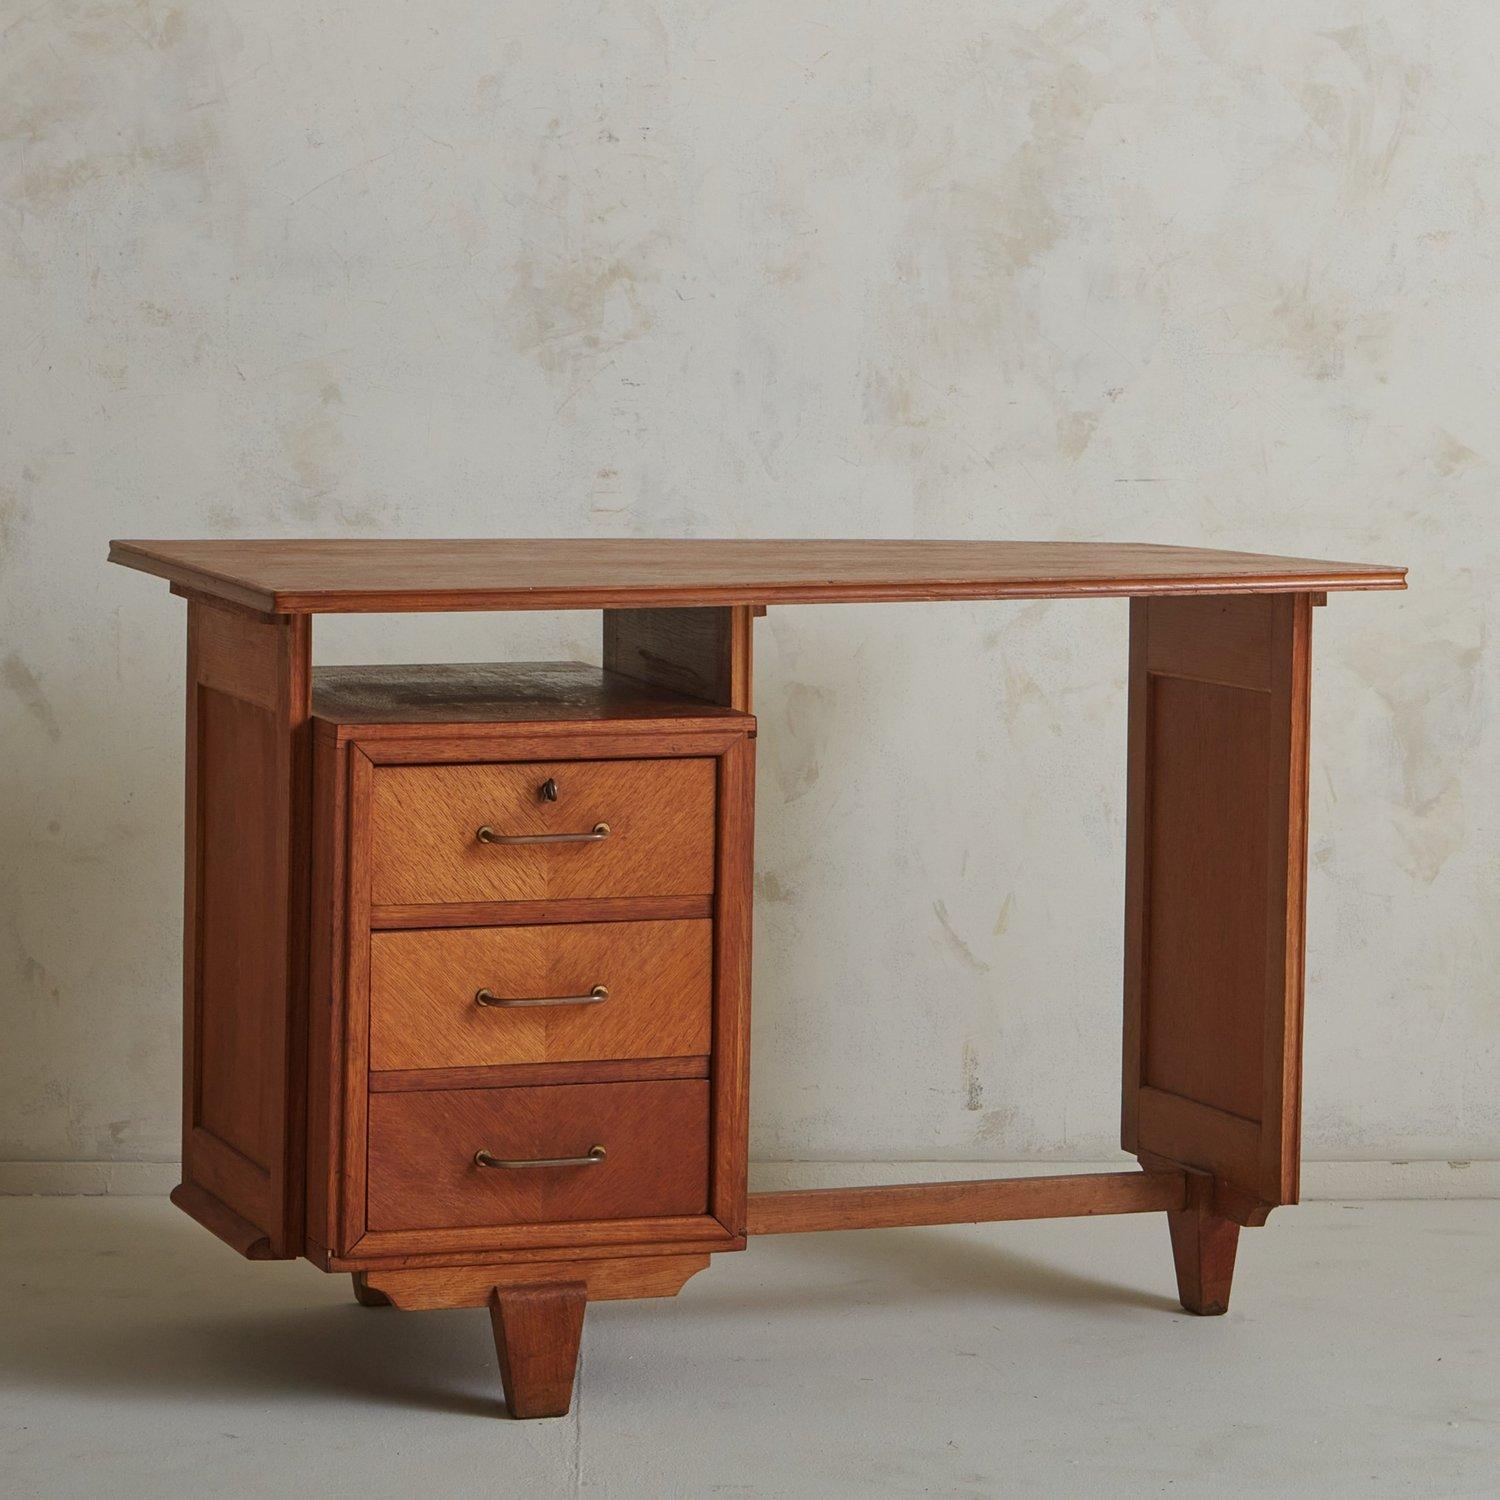 Ein französischer Schreibtisch aus den 1950er Jahren im Stil des französischen Designerduos Guillerme et Chambron. Dieser Schreibtisch wurde aus Eichenholz mit wunderschöner Maserung und geschnitzten Details gefertigt. Es hat drei Schubladen, deren